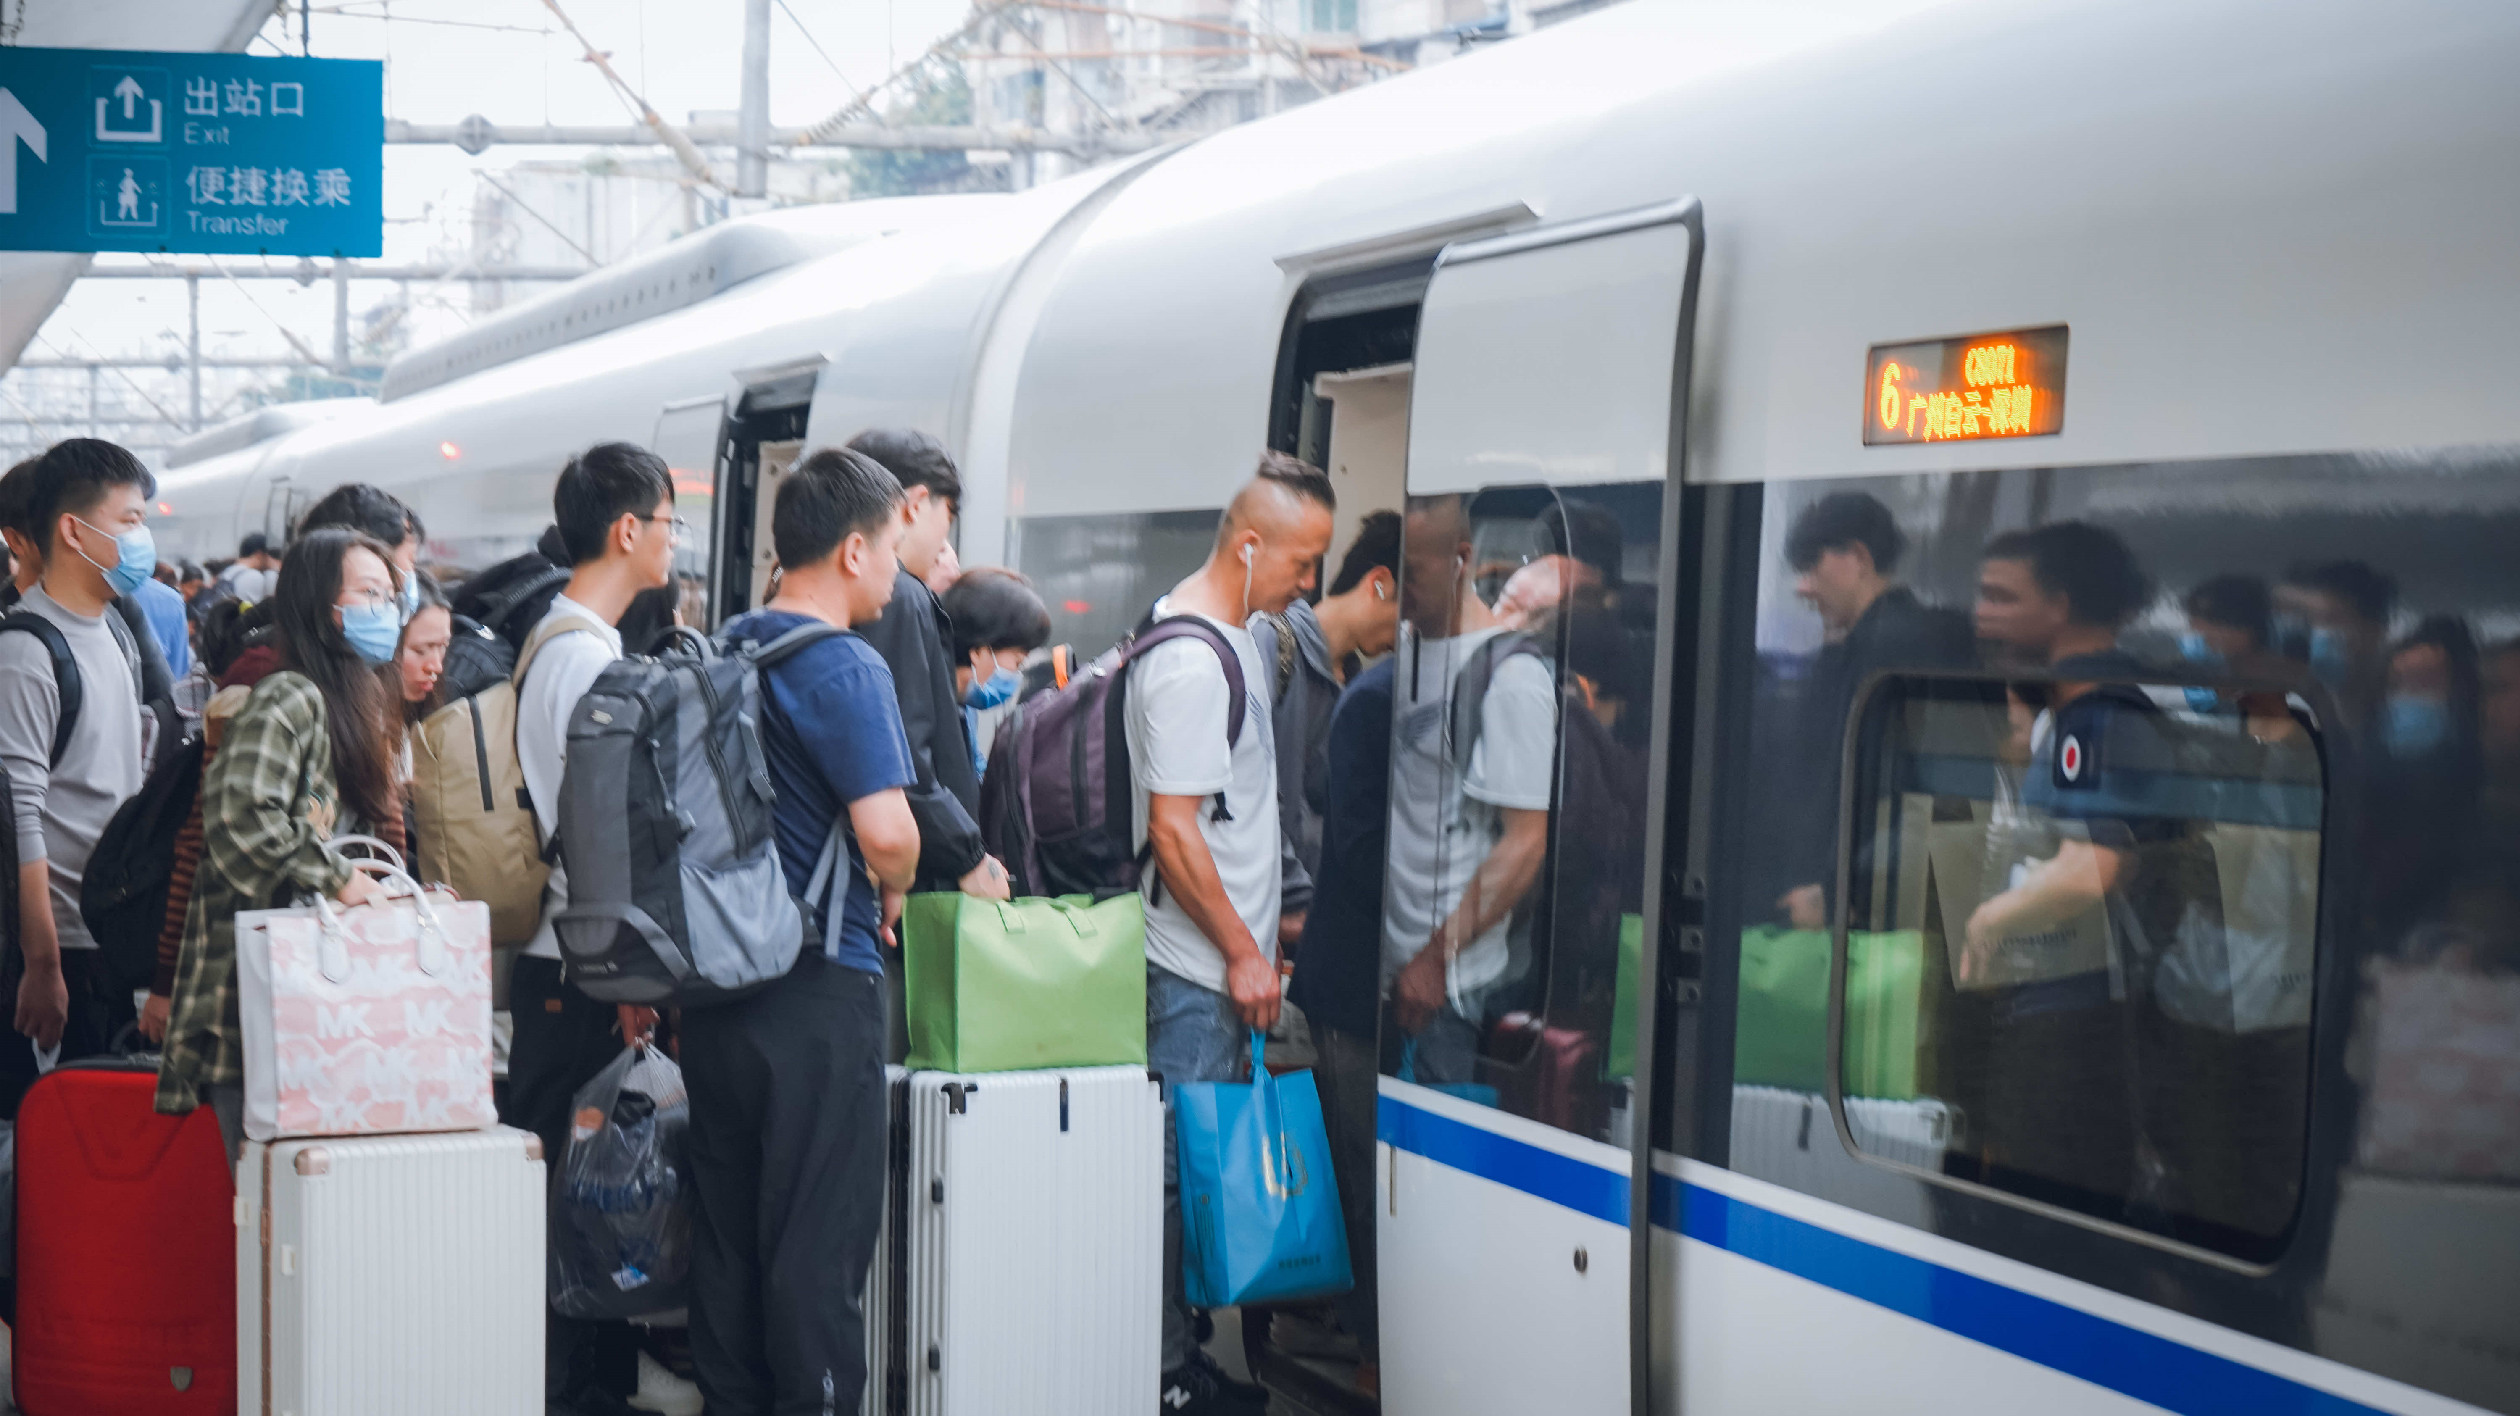 廣鐵今日預計發送旅客183.1萬人次